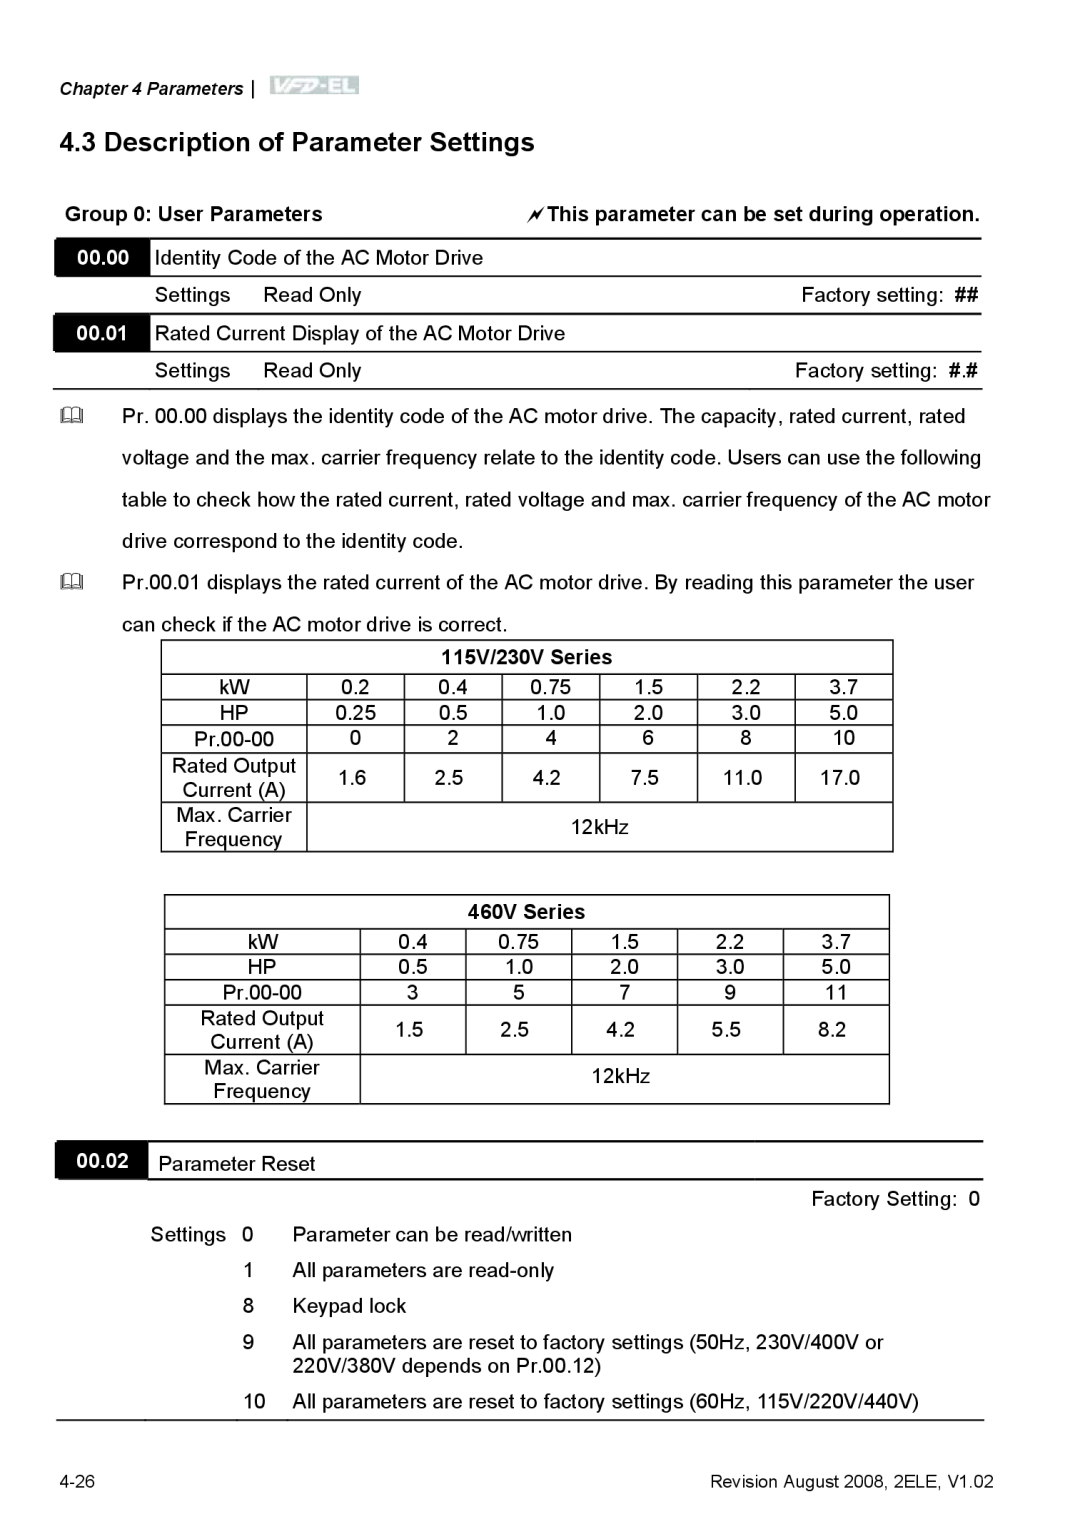 Delta Electronics VFD-EL manual Description of Parameter Settings, 00.02, Parameter Reset 